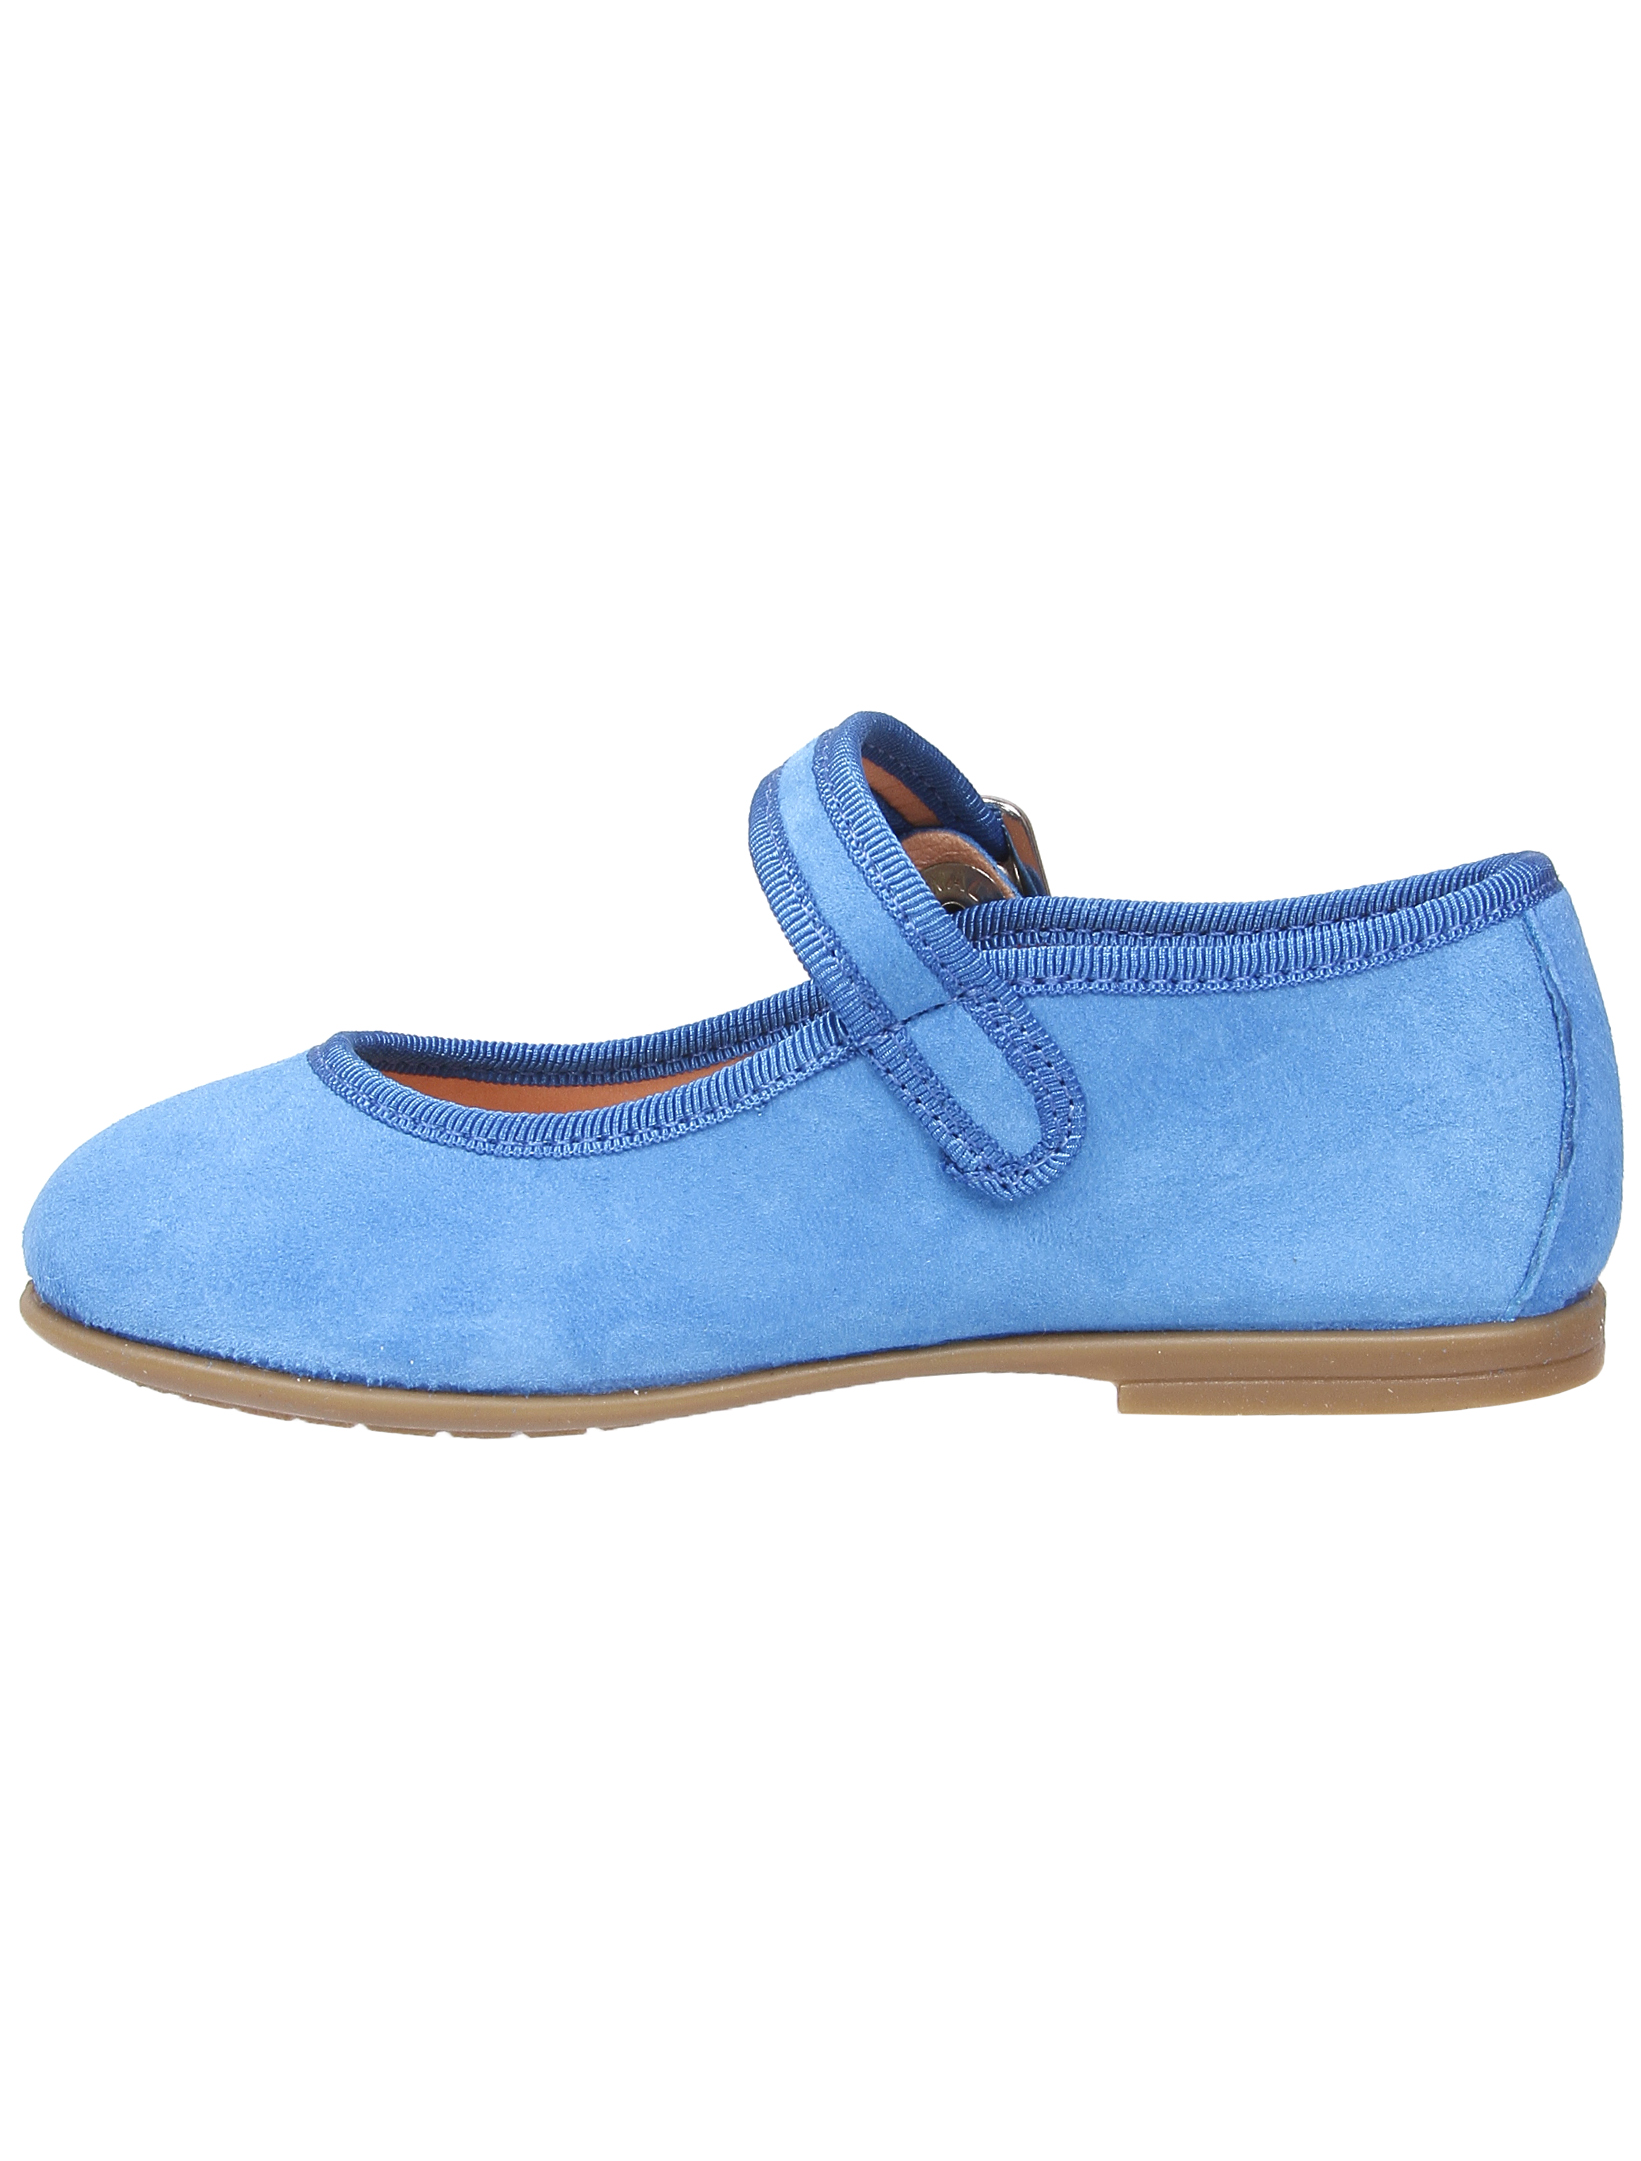 Туфли UNISA 1952860, цвет голубой, размер 36 2011509970013 - фото 4